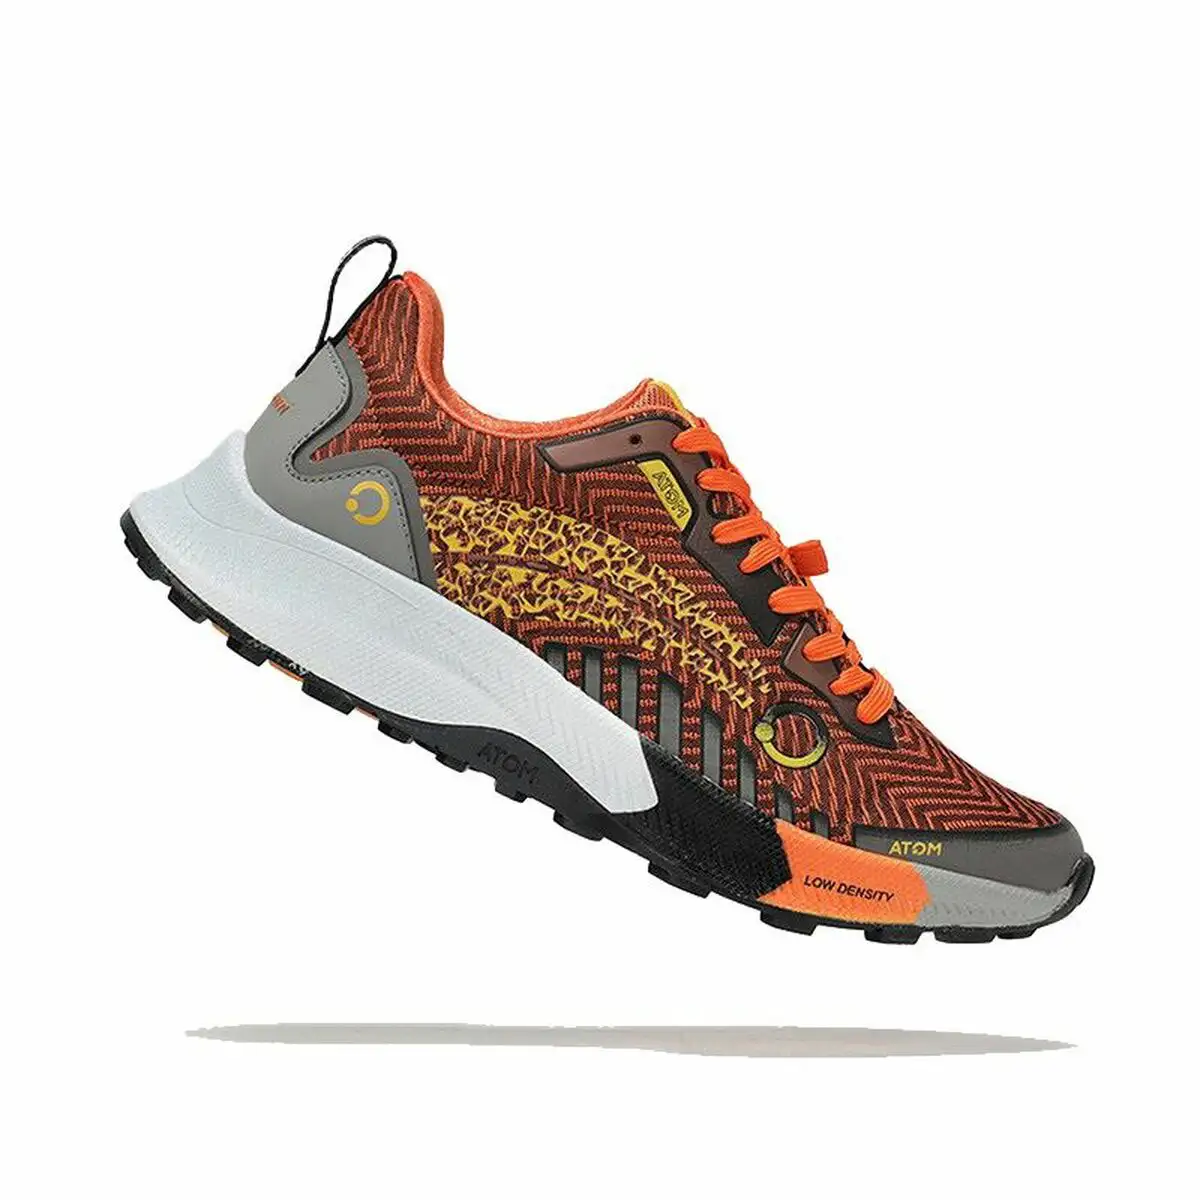 Chaussures de running pour adultes atom at121 technology volcano orange homme_4617. Bienvenue sur DIAYTAR SENEGAL - Votre Galerie Shopping Personnalisée. Découvrez un monde de produits diversifiés qui expriment votre style unique et votre passion pour la qualité.